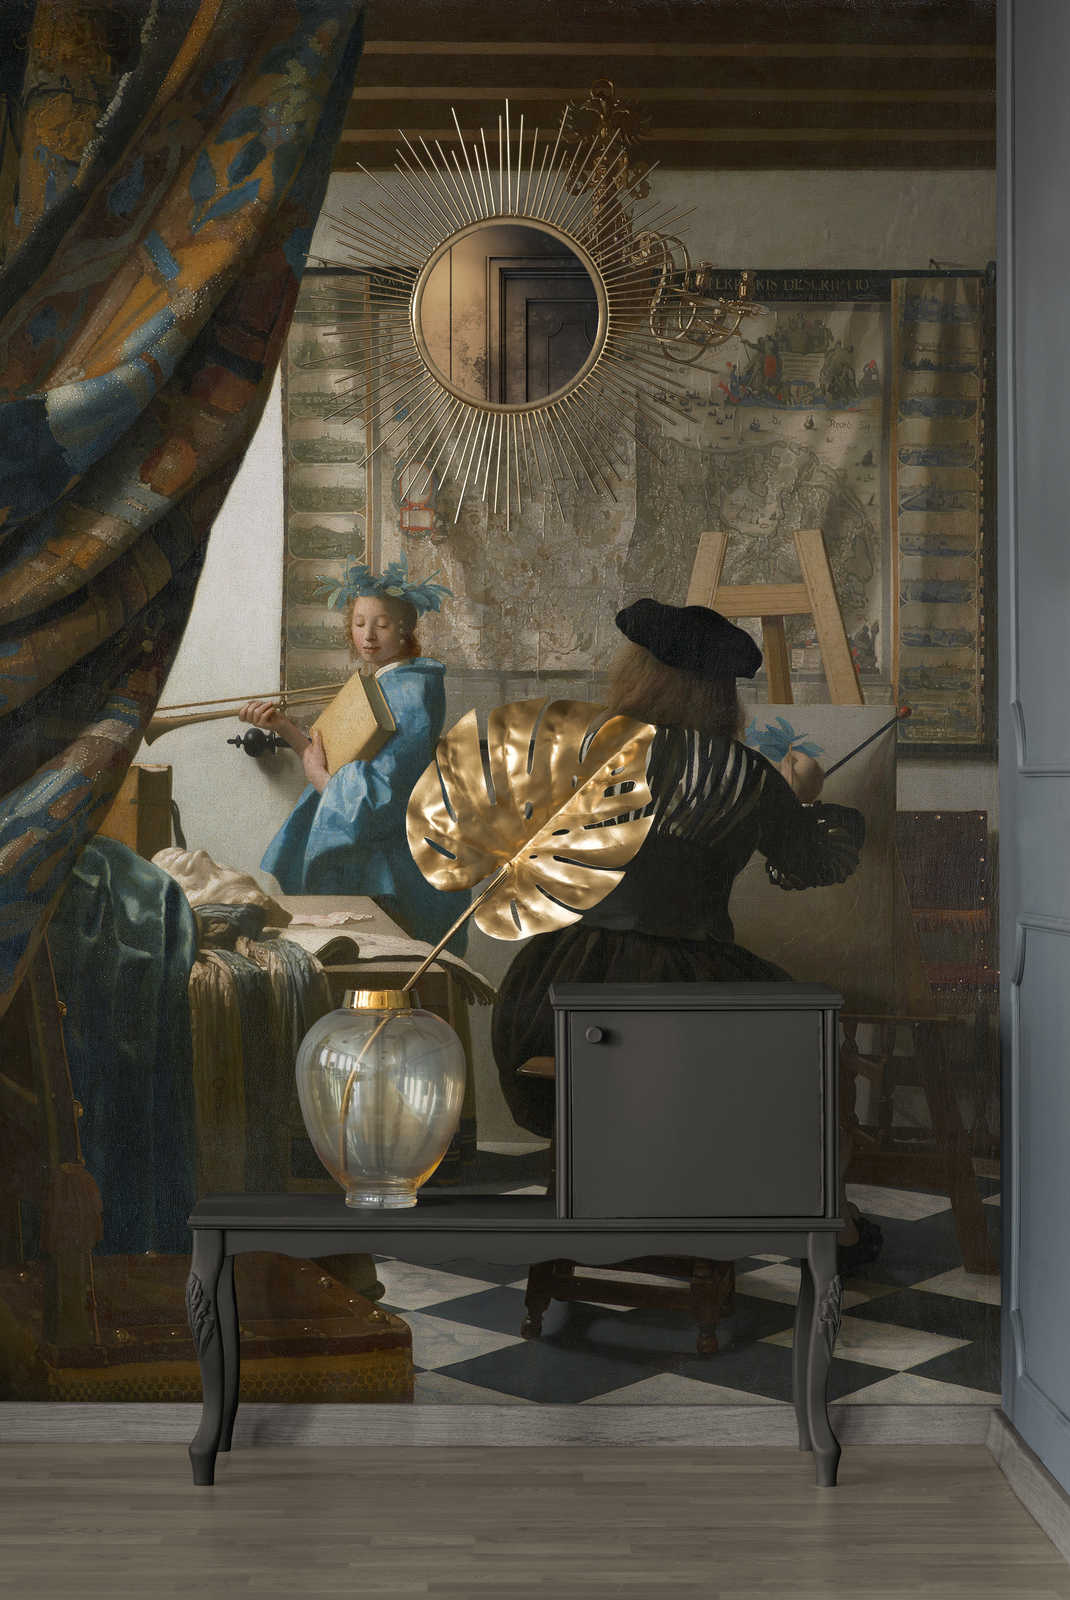             Fotomurali "Vermeer nel suo studio" di Jan Vermeer
        